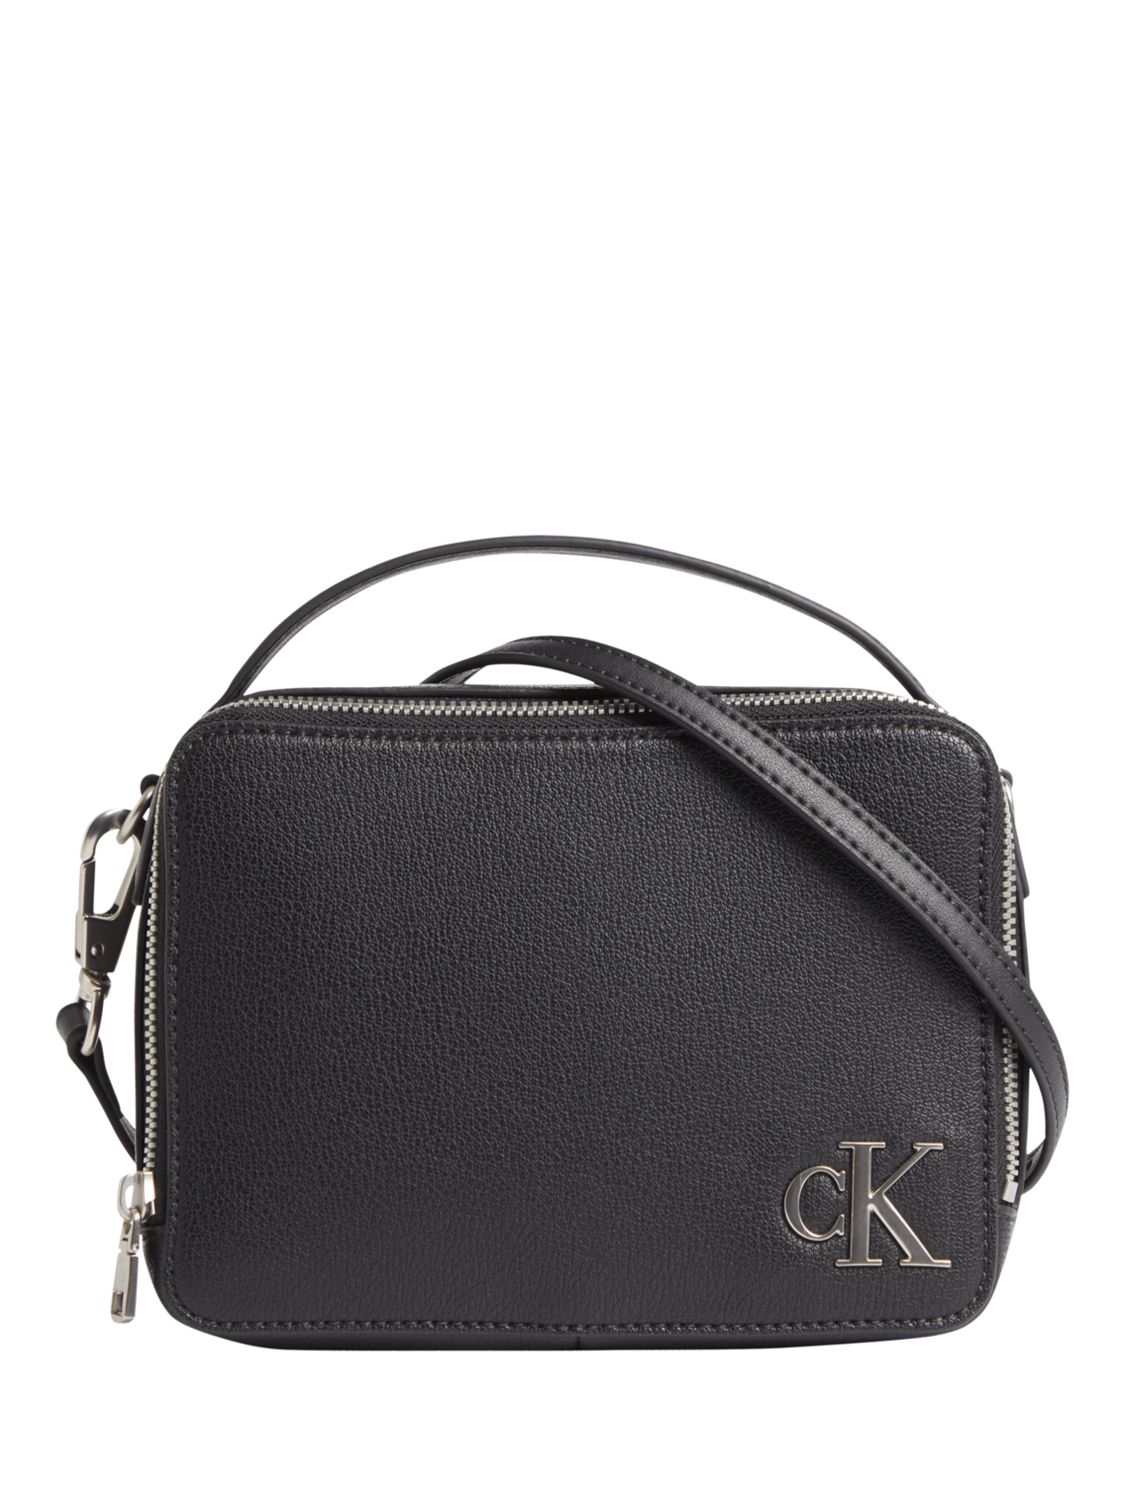 Calvin Klein Monogram Grab Handle Cross Body Bag, Black